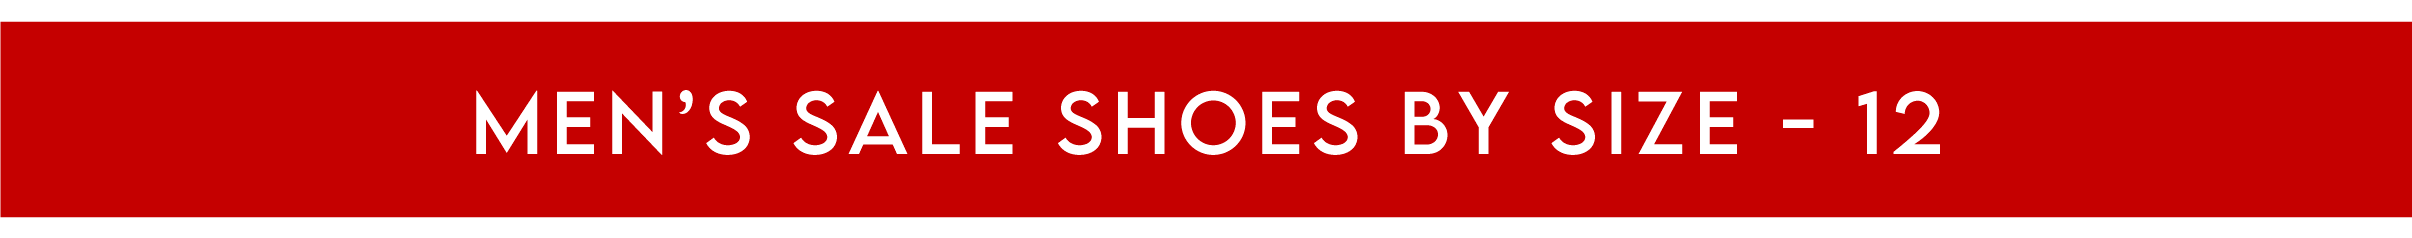 Men's Shoe Sale